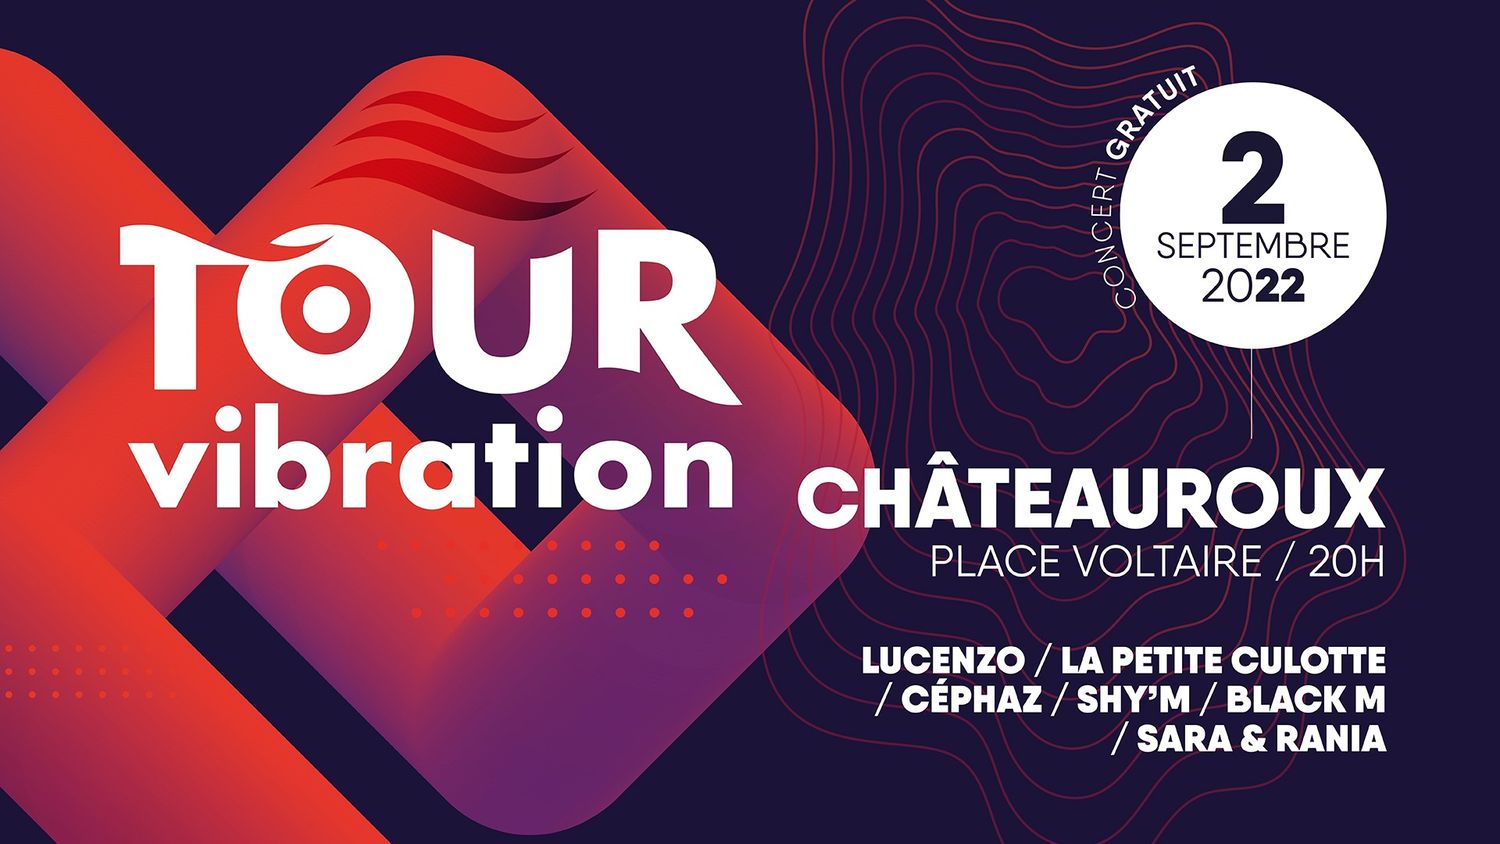 Tour Vibration 2022 à Châteauroux, le 2 septembre